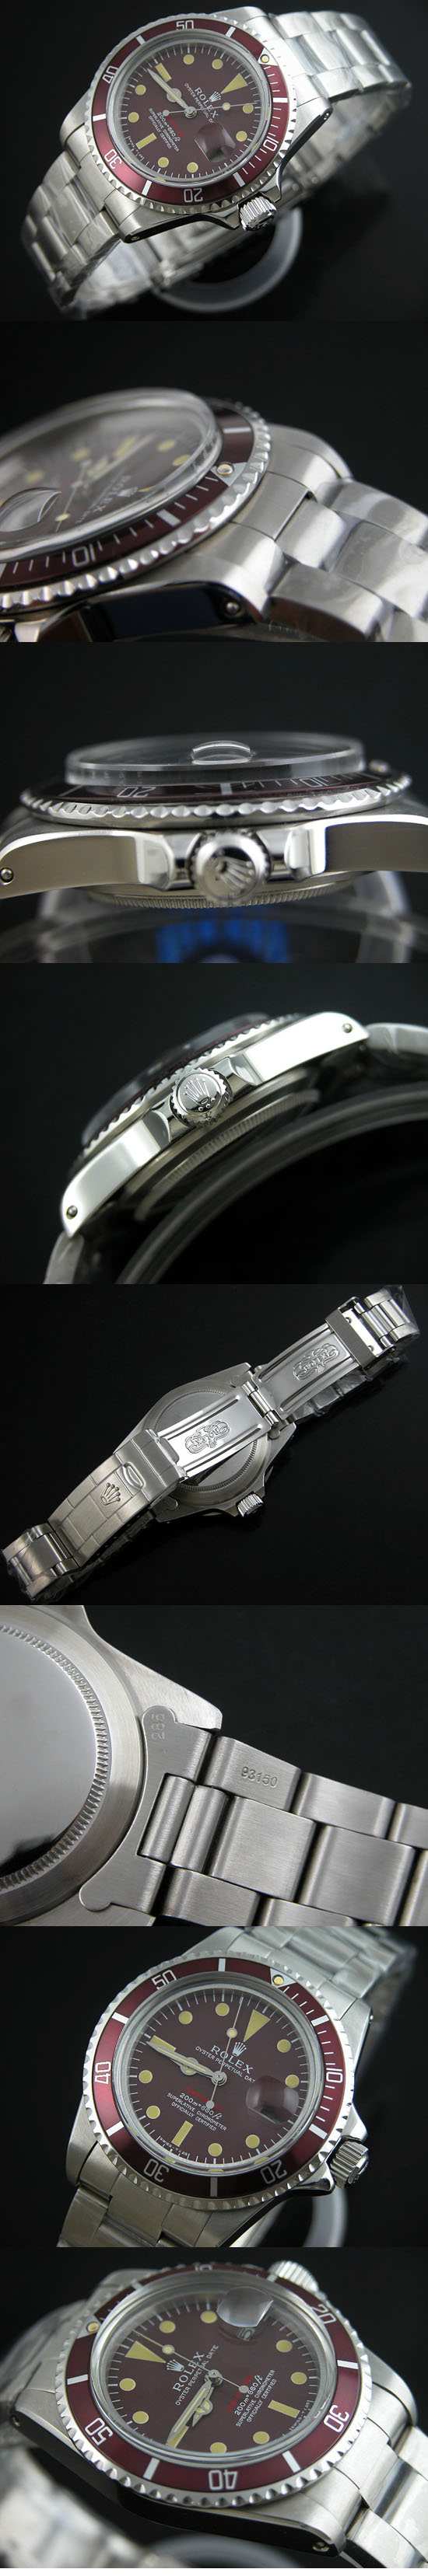 おしゃれなブランド時計がロレックス-サブマリーナ-ROLEX-1680-40-男性用 を提供します.